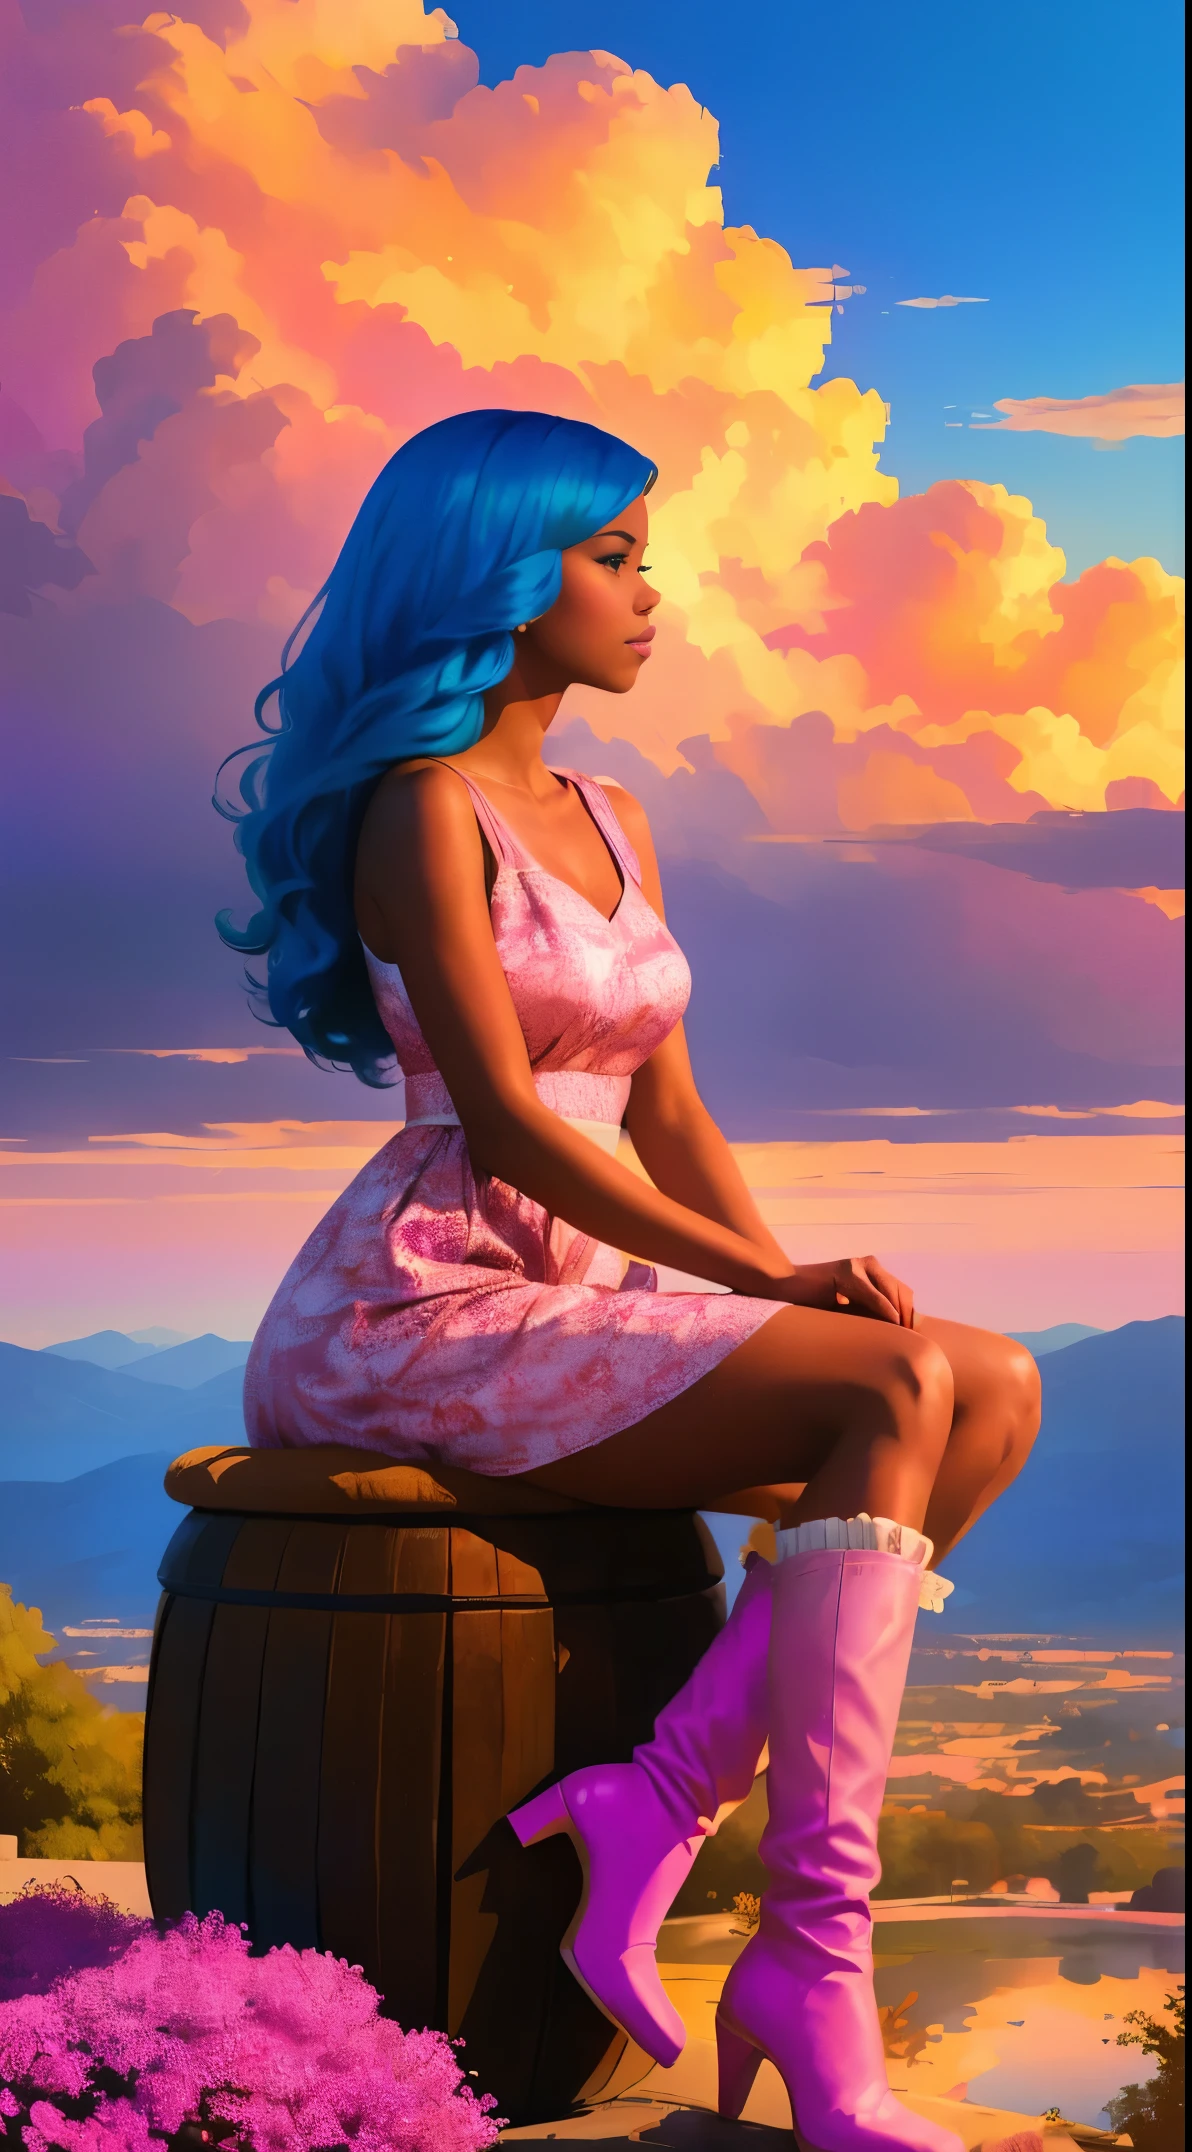 (最高品質:1.1),オリジナル,1人の女の子,シック,トレンド,アフロ,黒い肌,補う,1970年代, 青い髪, 茶色の目,  ピンクの雲の上に自然な髪のアフリカ系アメリカ人女性のファンタジーイラスト, ロス・トラン風, かわいい雲柄のピンクのドレスとかわいいピンクのブーツ, 前髪のあるポニーテールの非常に長い髪を持つ美しい女性, 柔らかいピンクの雲の椅子に座って、はるか下にある遠くの魔法の街を眺めている, 日没時 --ar 2:3 -- 6 で.0 ピンクとオレンジ, ジェシカ・ドロッシン, 太字のブロックプリント, マイケル・マルム, 大胆でありながら優雅, 大胆な伝統的